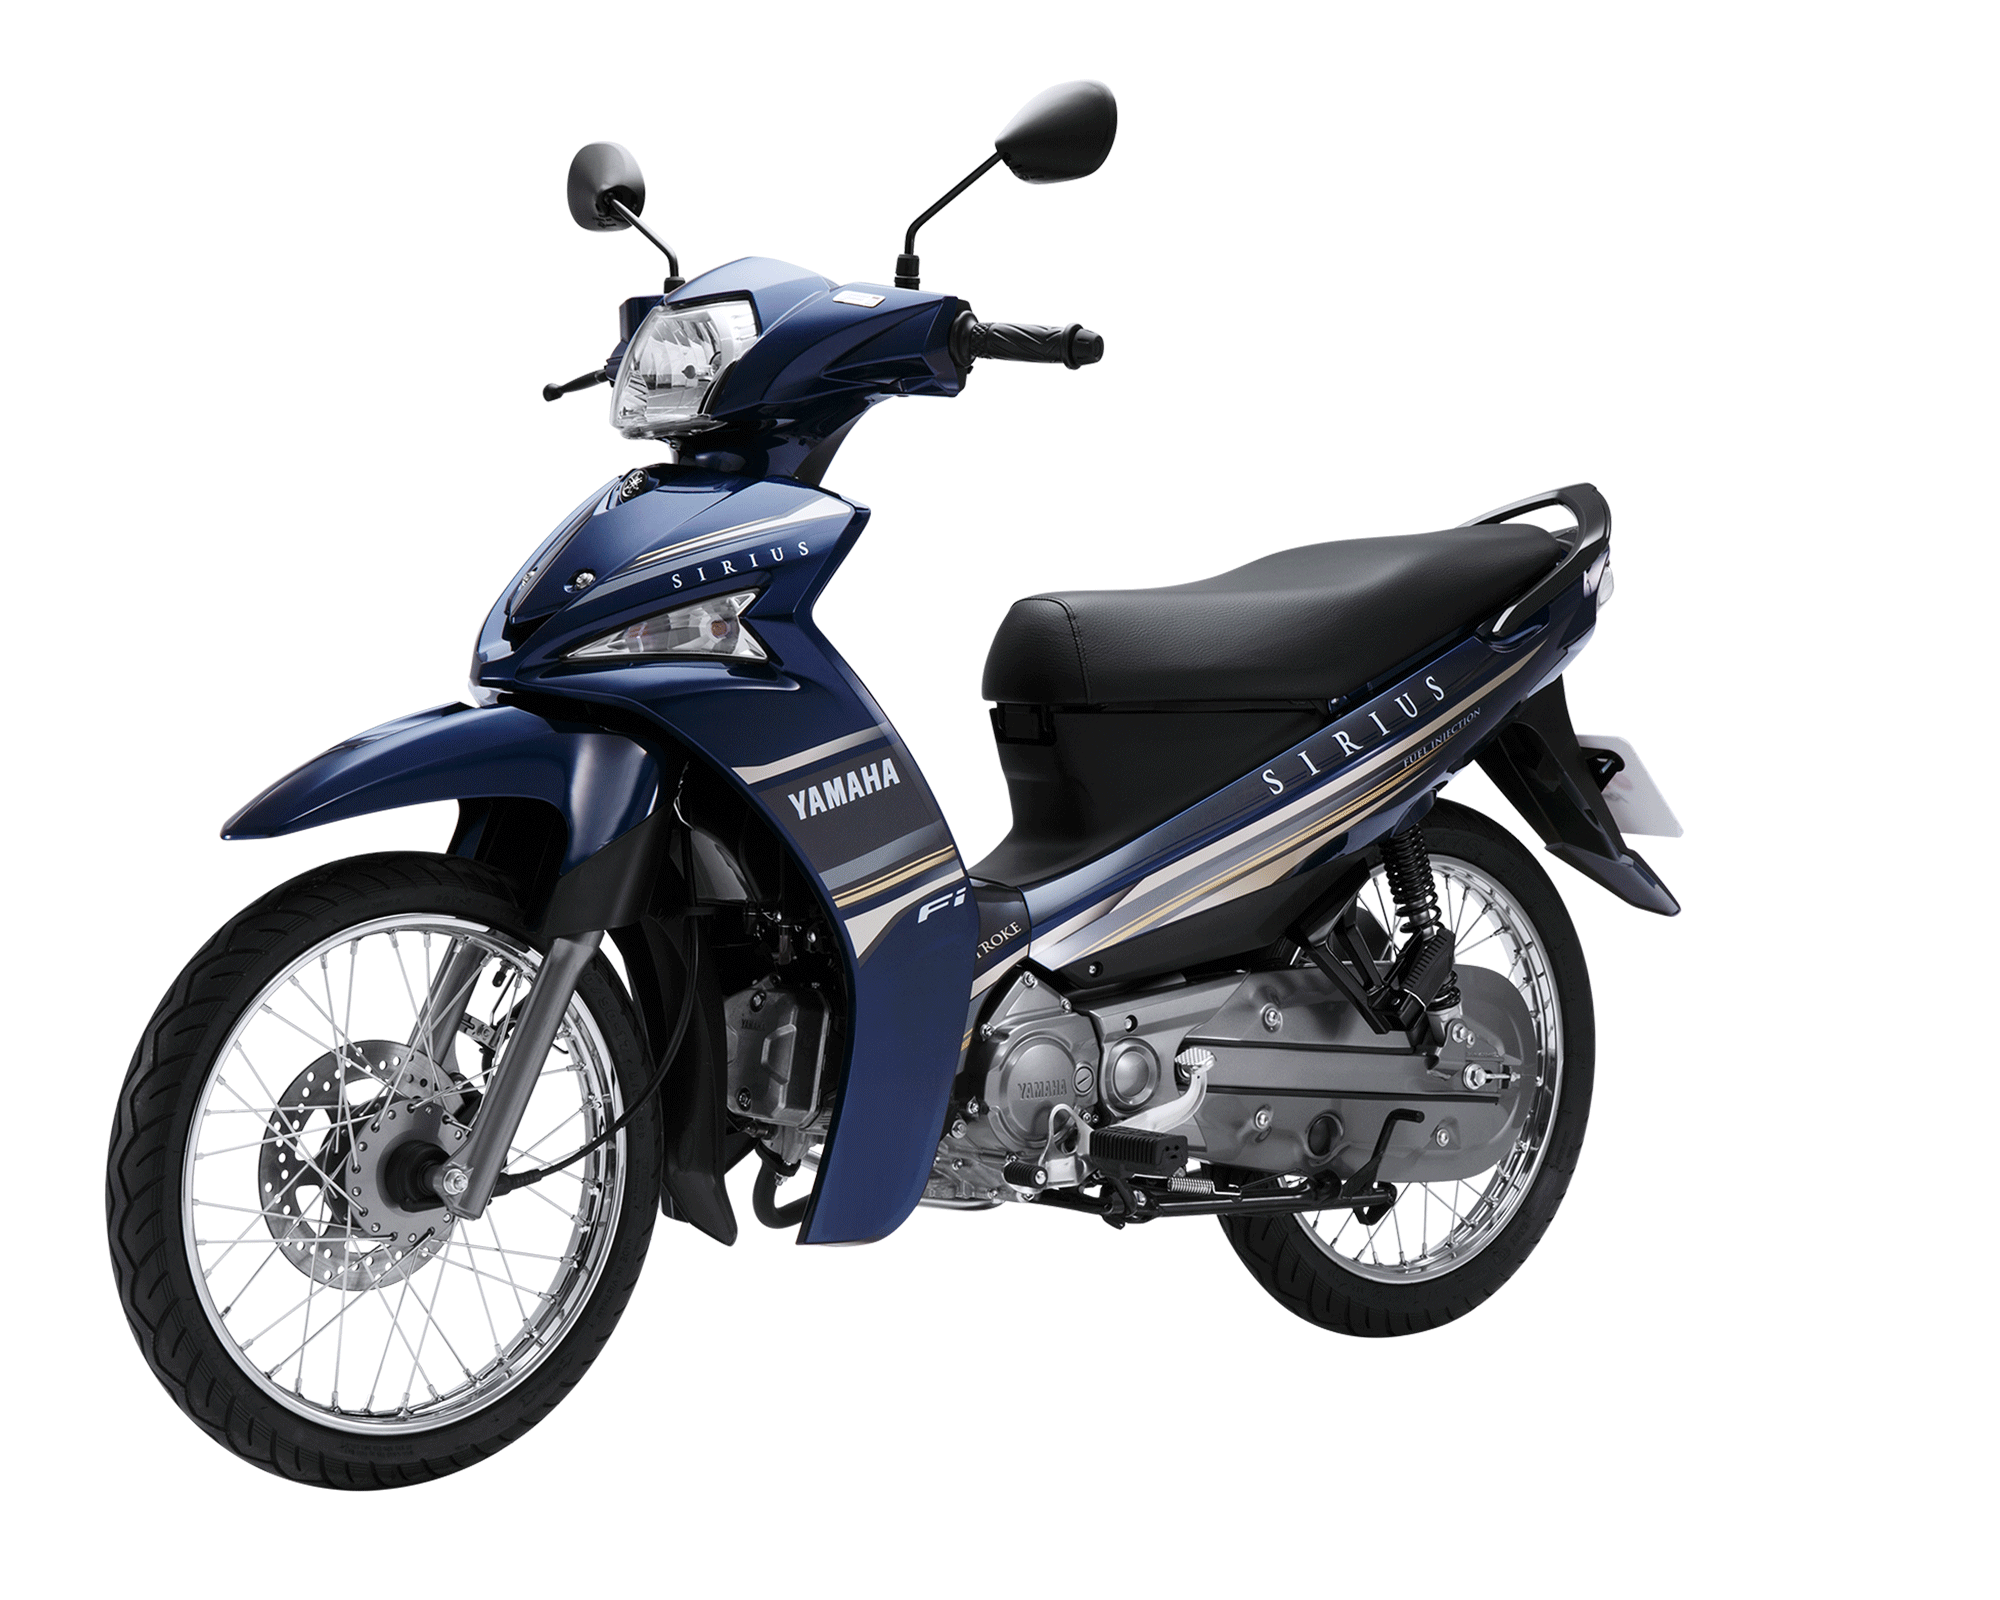 Giá mua các loại xe gắn máy Yamaha, xe Exciter 2018 mới nhất